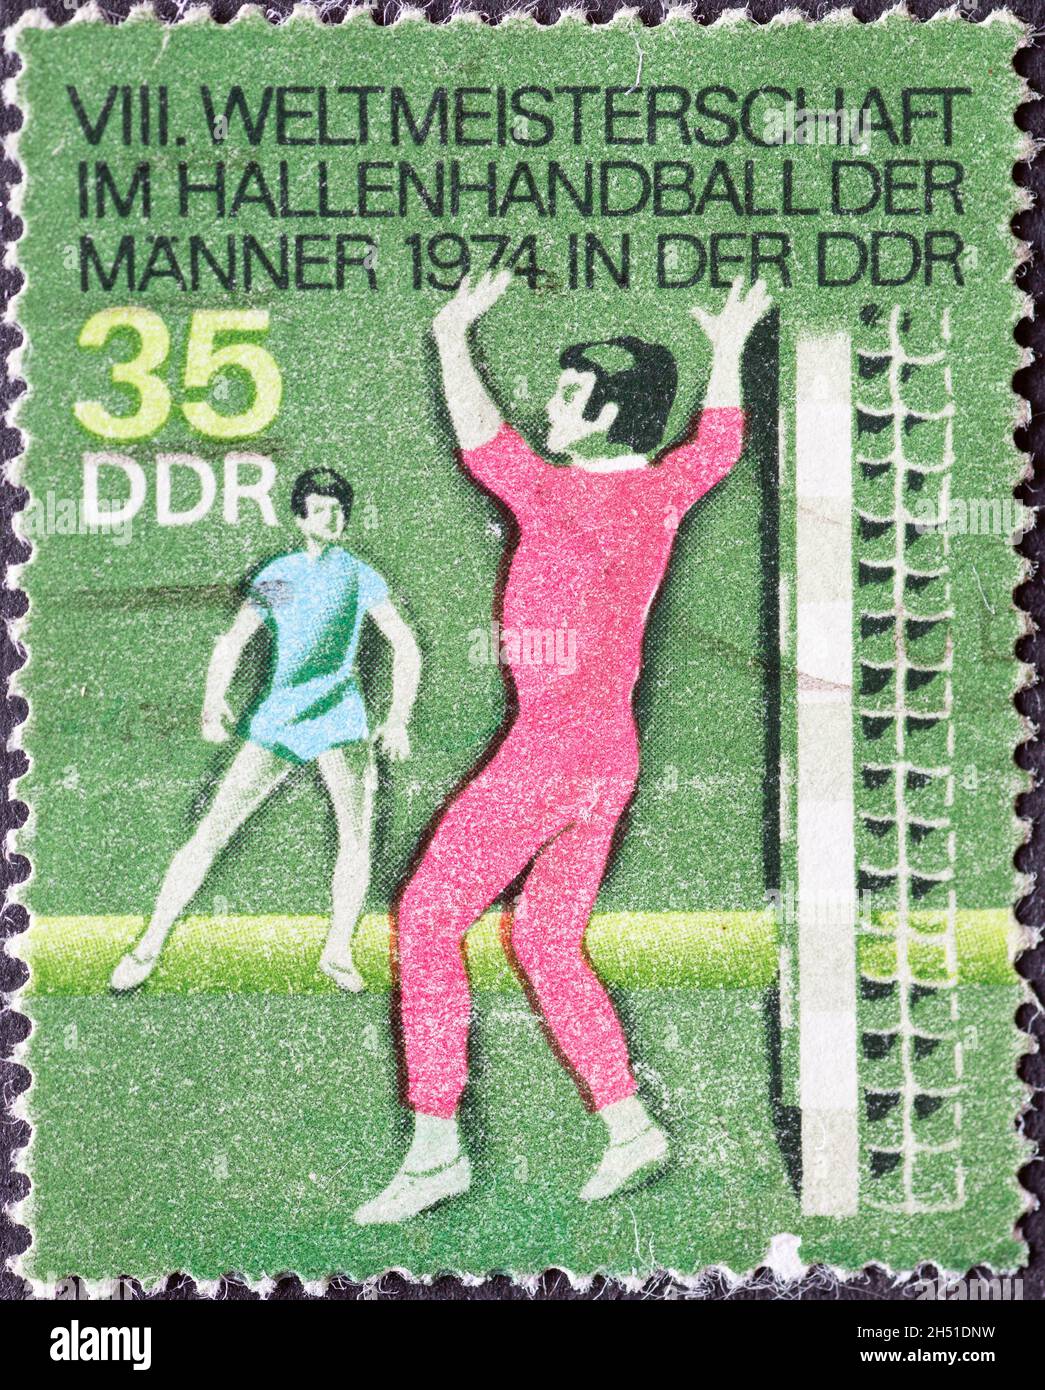 ALLEMAGNE, DDR - VERS 1974 : timbre-poste de l'Allemagne, GDR montrant 1974 hommes en intérieur Handball World Championship, gardien de but Banque D'Images